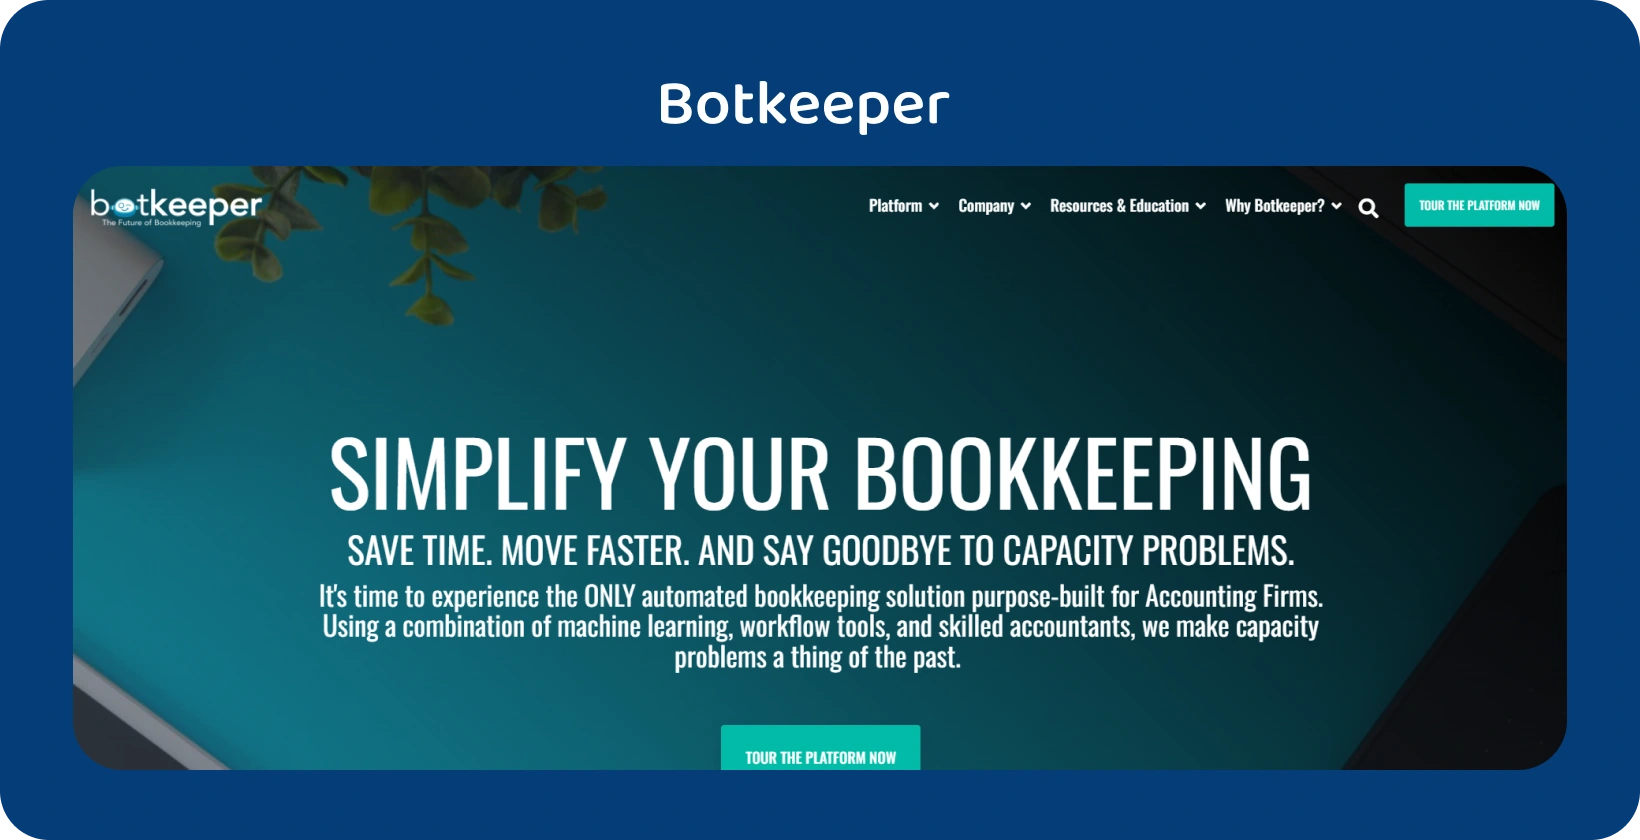 تسلط الصفحة الرئيسية ل Botkeeper الضوء على تبسيط مسك الدفاتر للمحاسبين عبر تقنية الأتمتة الخاصة بها.